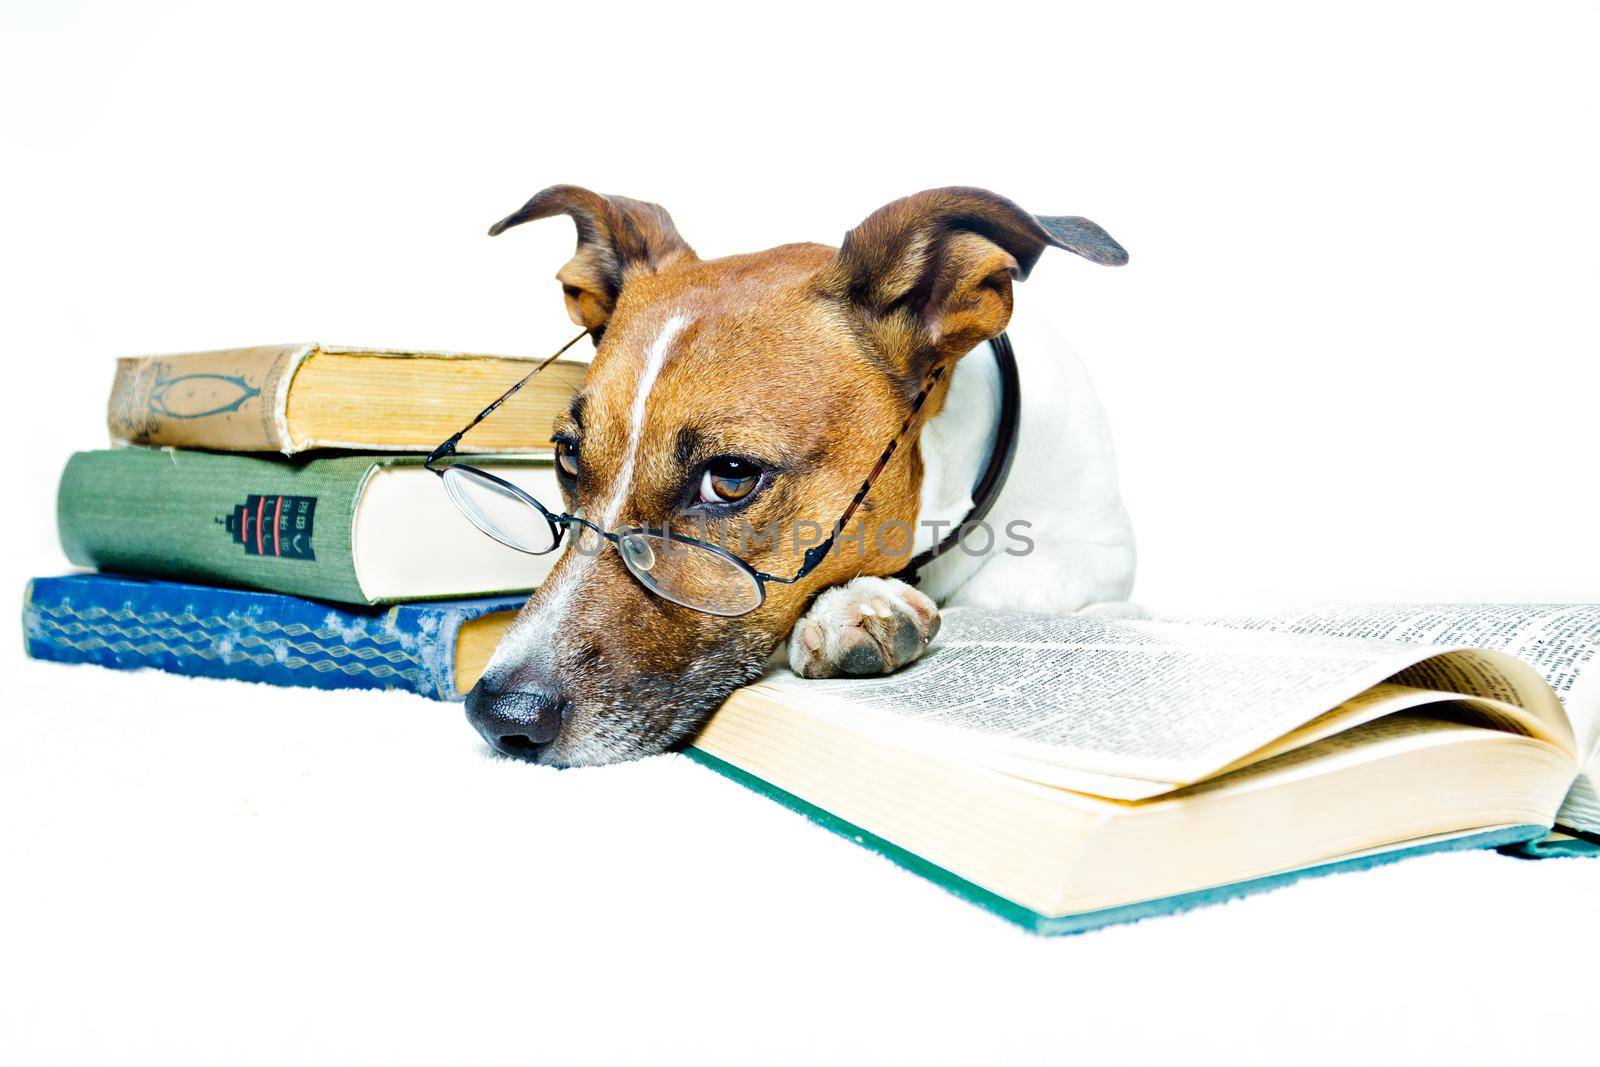 dog reading book  by Brosch